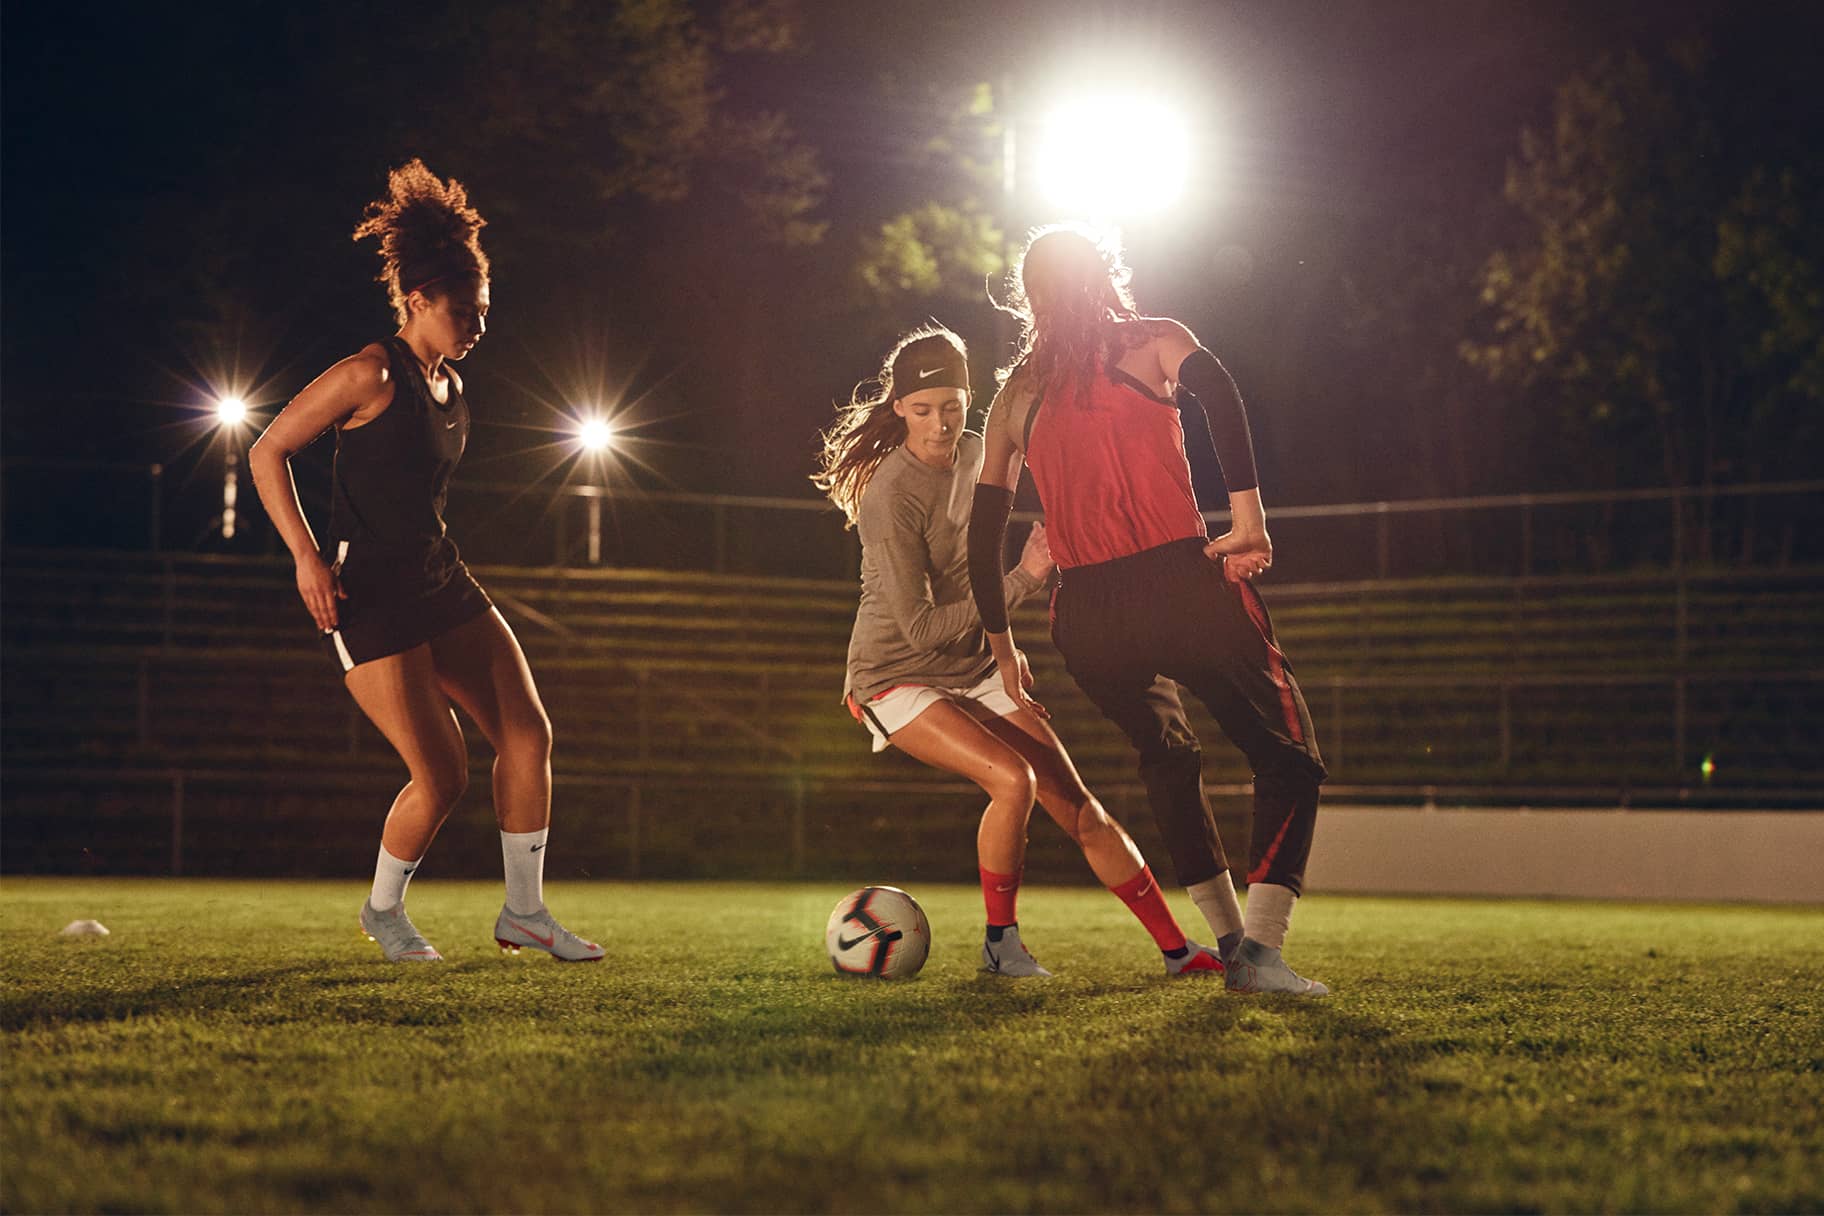  Die 7 besten Teile der Nike Fußballausrüstung für Frauen